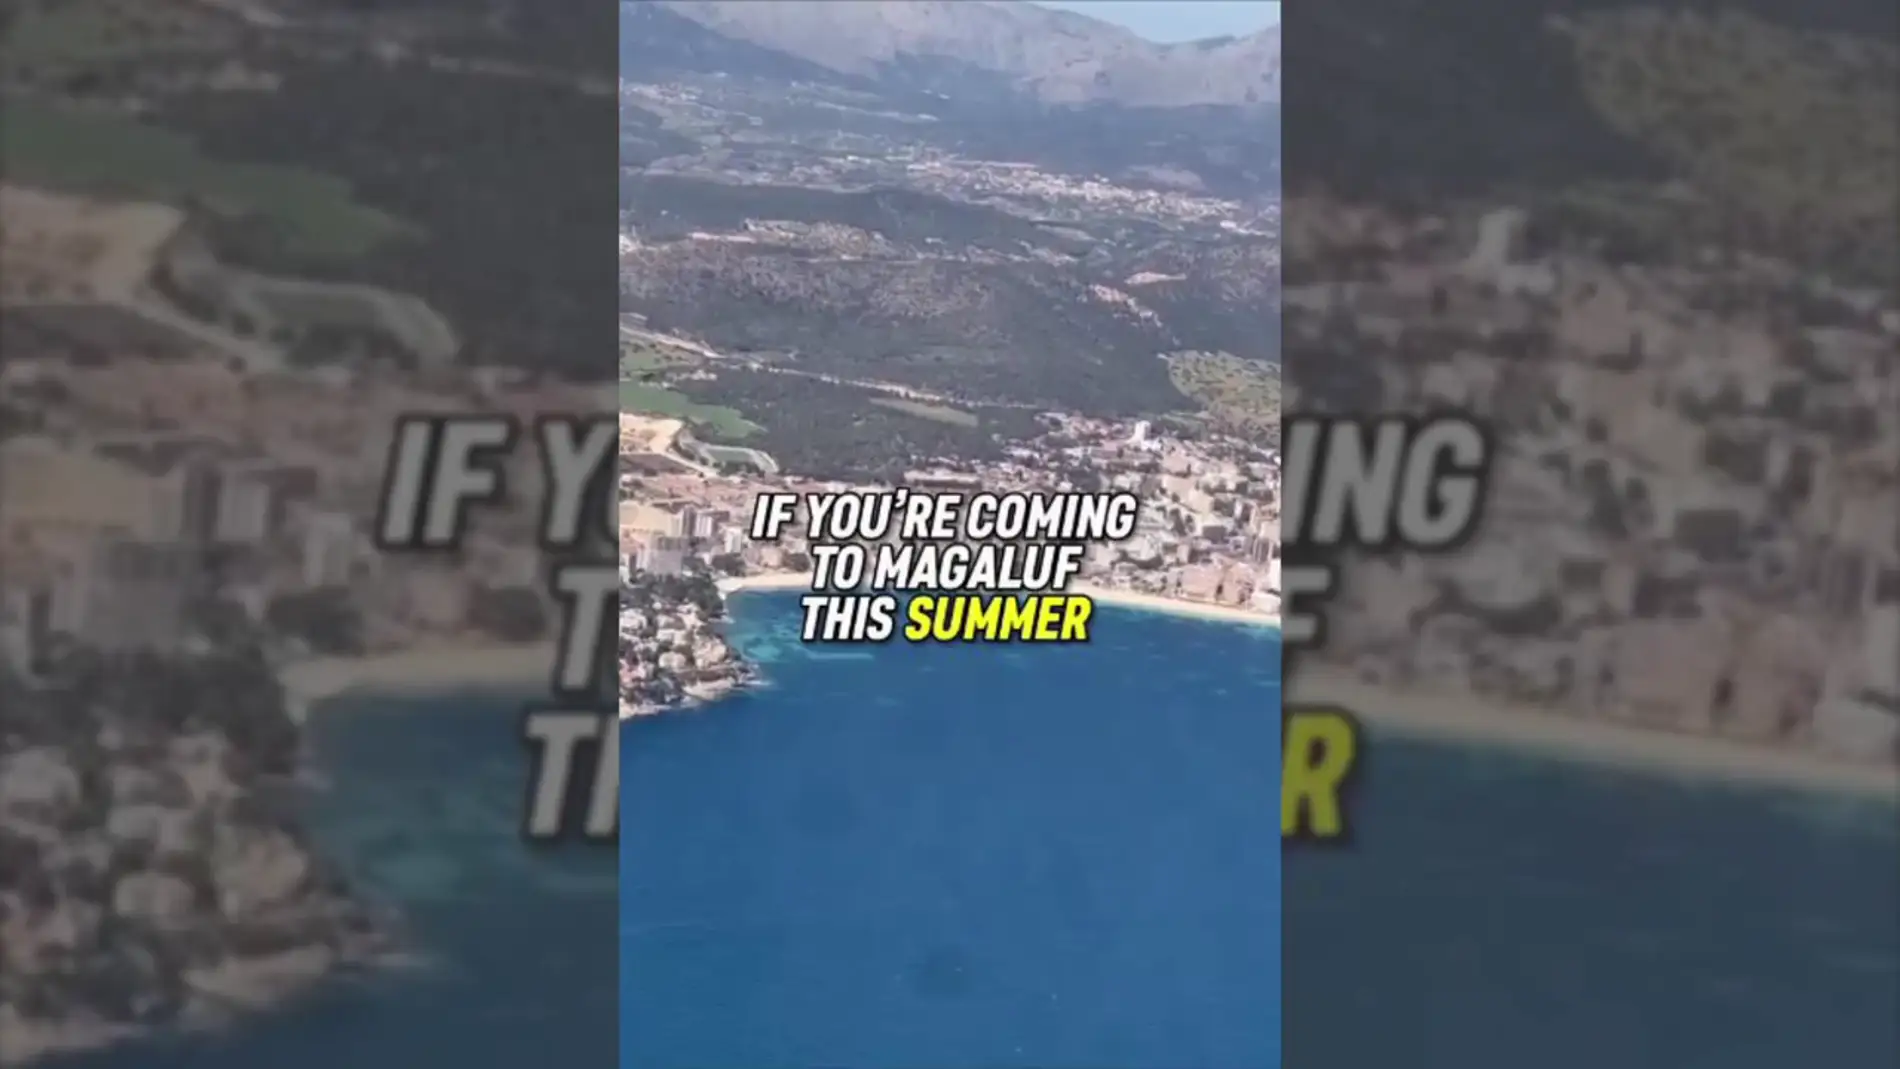 Una empresa de eventos se hace viral en TikTok al compartir consejos para extranjeros que viajen a Magaluf: "No saltes por el balcón"